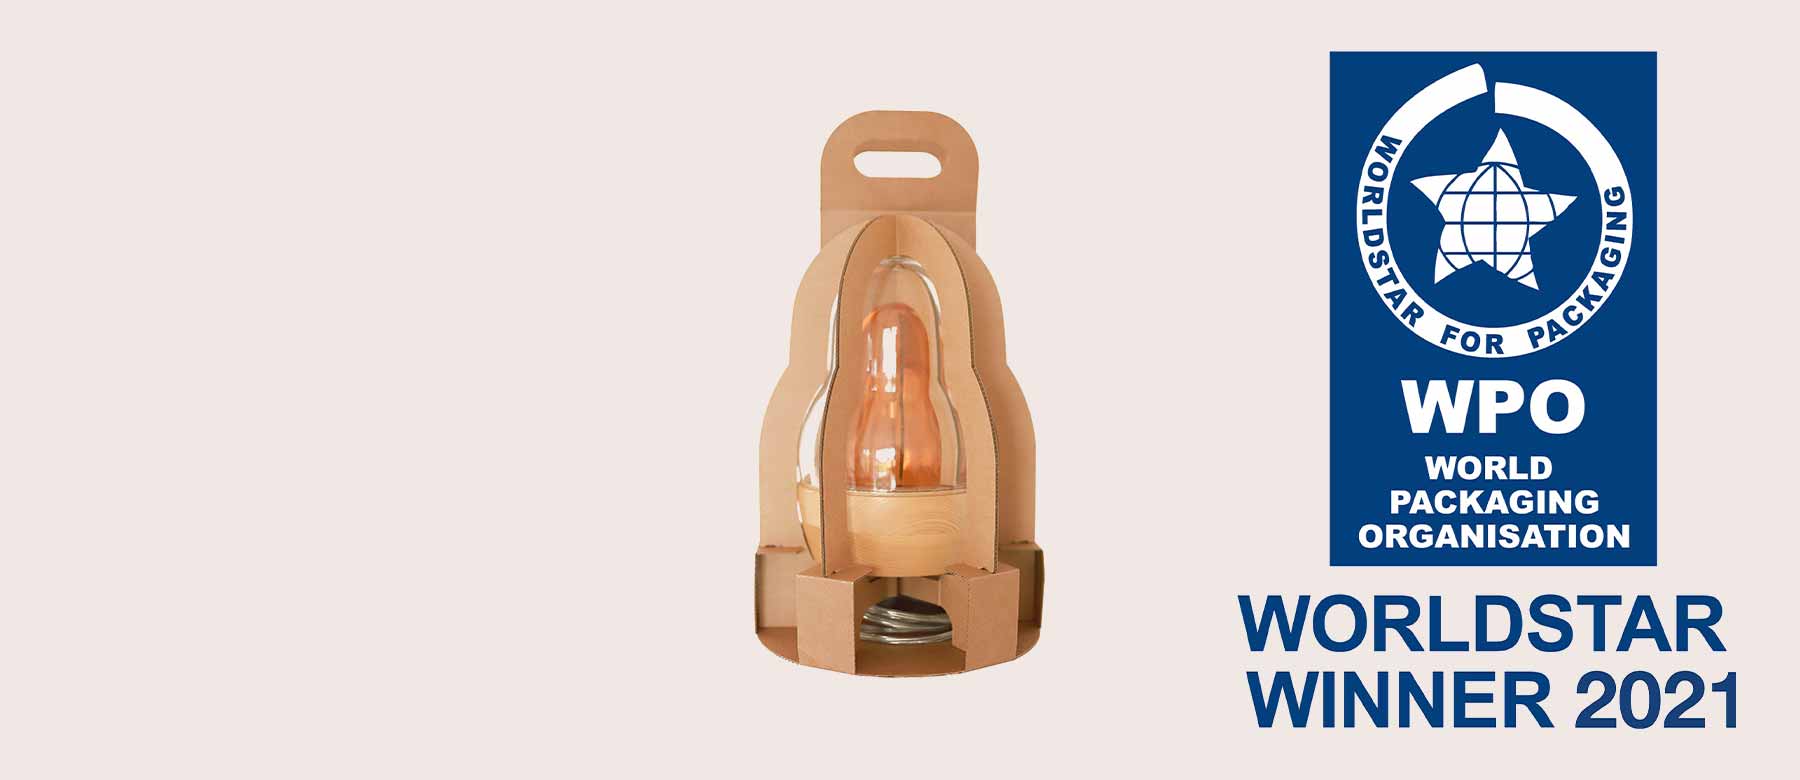 Opakowanie na designerską lampę THIMM otrzymało nagrodę WorldStar Packaging Award 2021